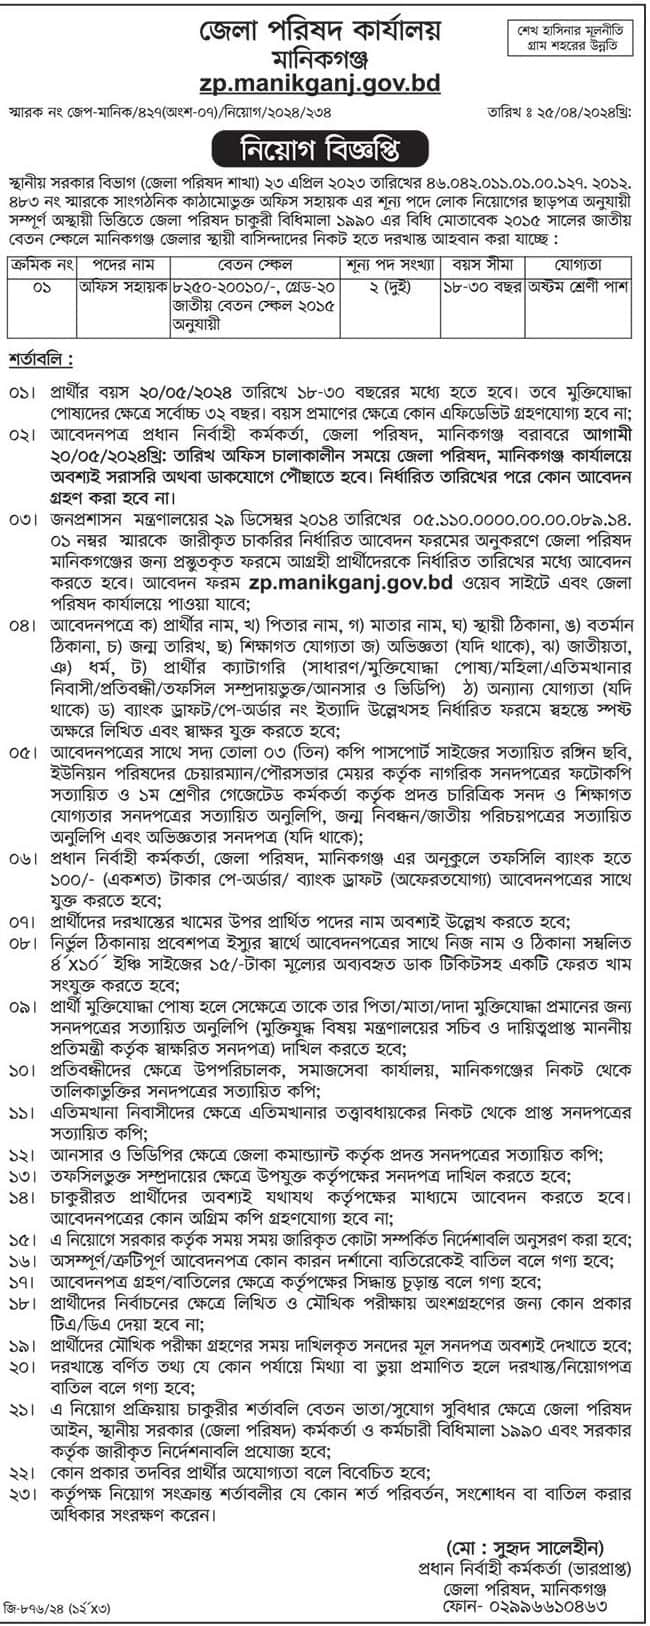 Manikganj Zila Parishad job circular